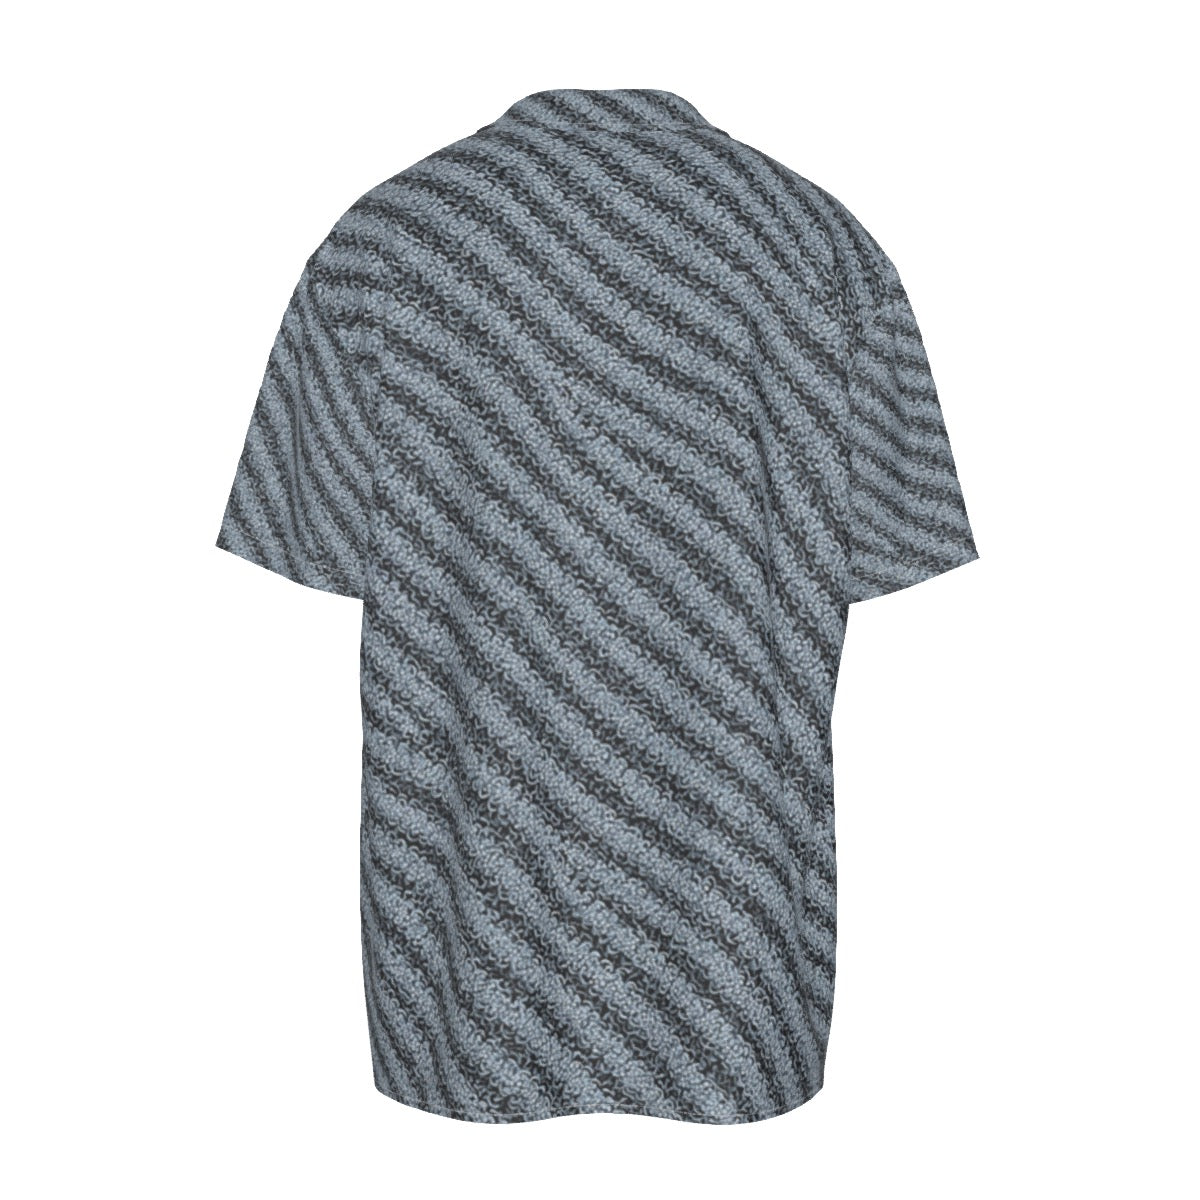 Cotte de Mails -- Men's Imitation Silk Short-Sleeved Shirt